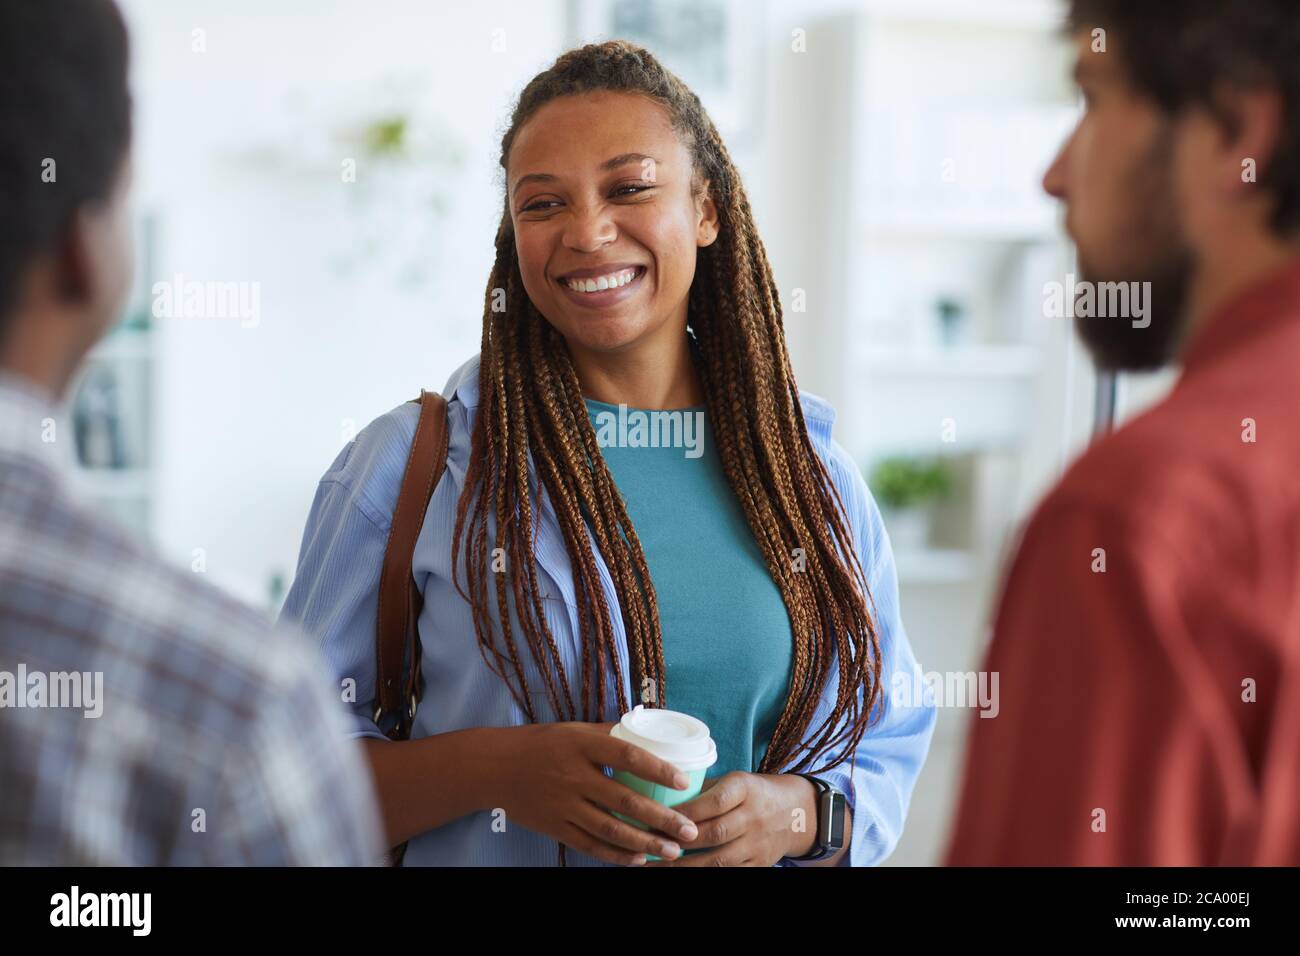 Vita in su ritratto della donna afroamericana contemporanea sorridente felice mentre parla con gli amici o i colleghi all'interno, copy space Foto Stock